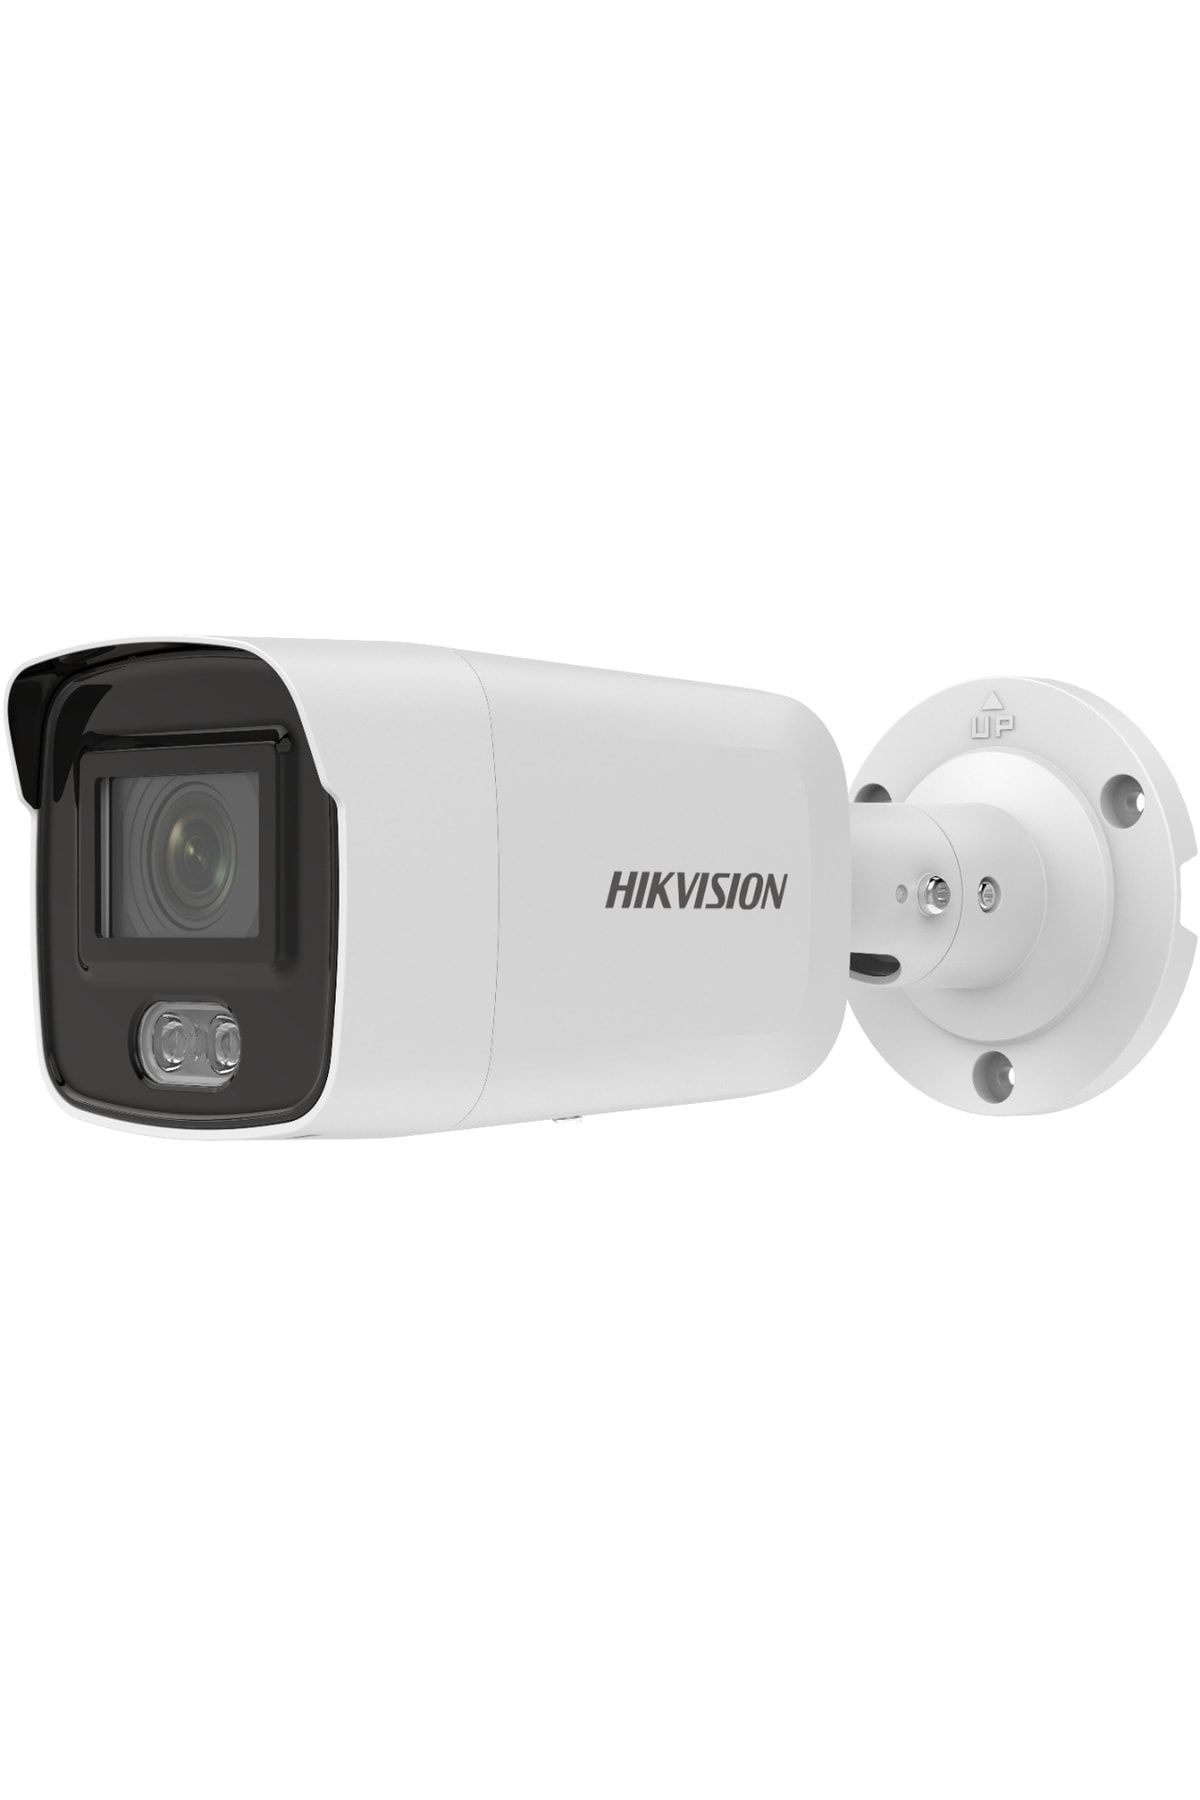 Hikvision Ds-2cd2047g2-l 4 mp 2.8 mm Colorvu Ip Bullet Kamera